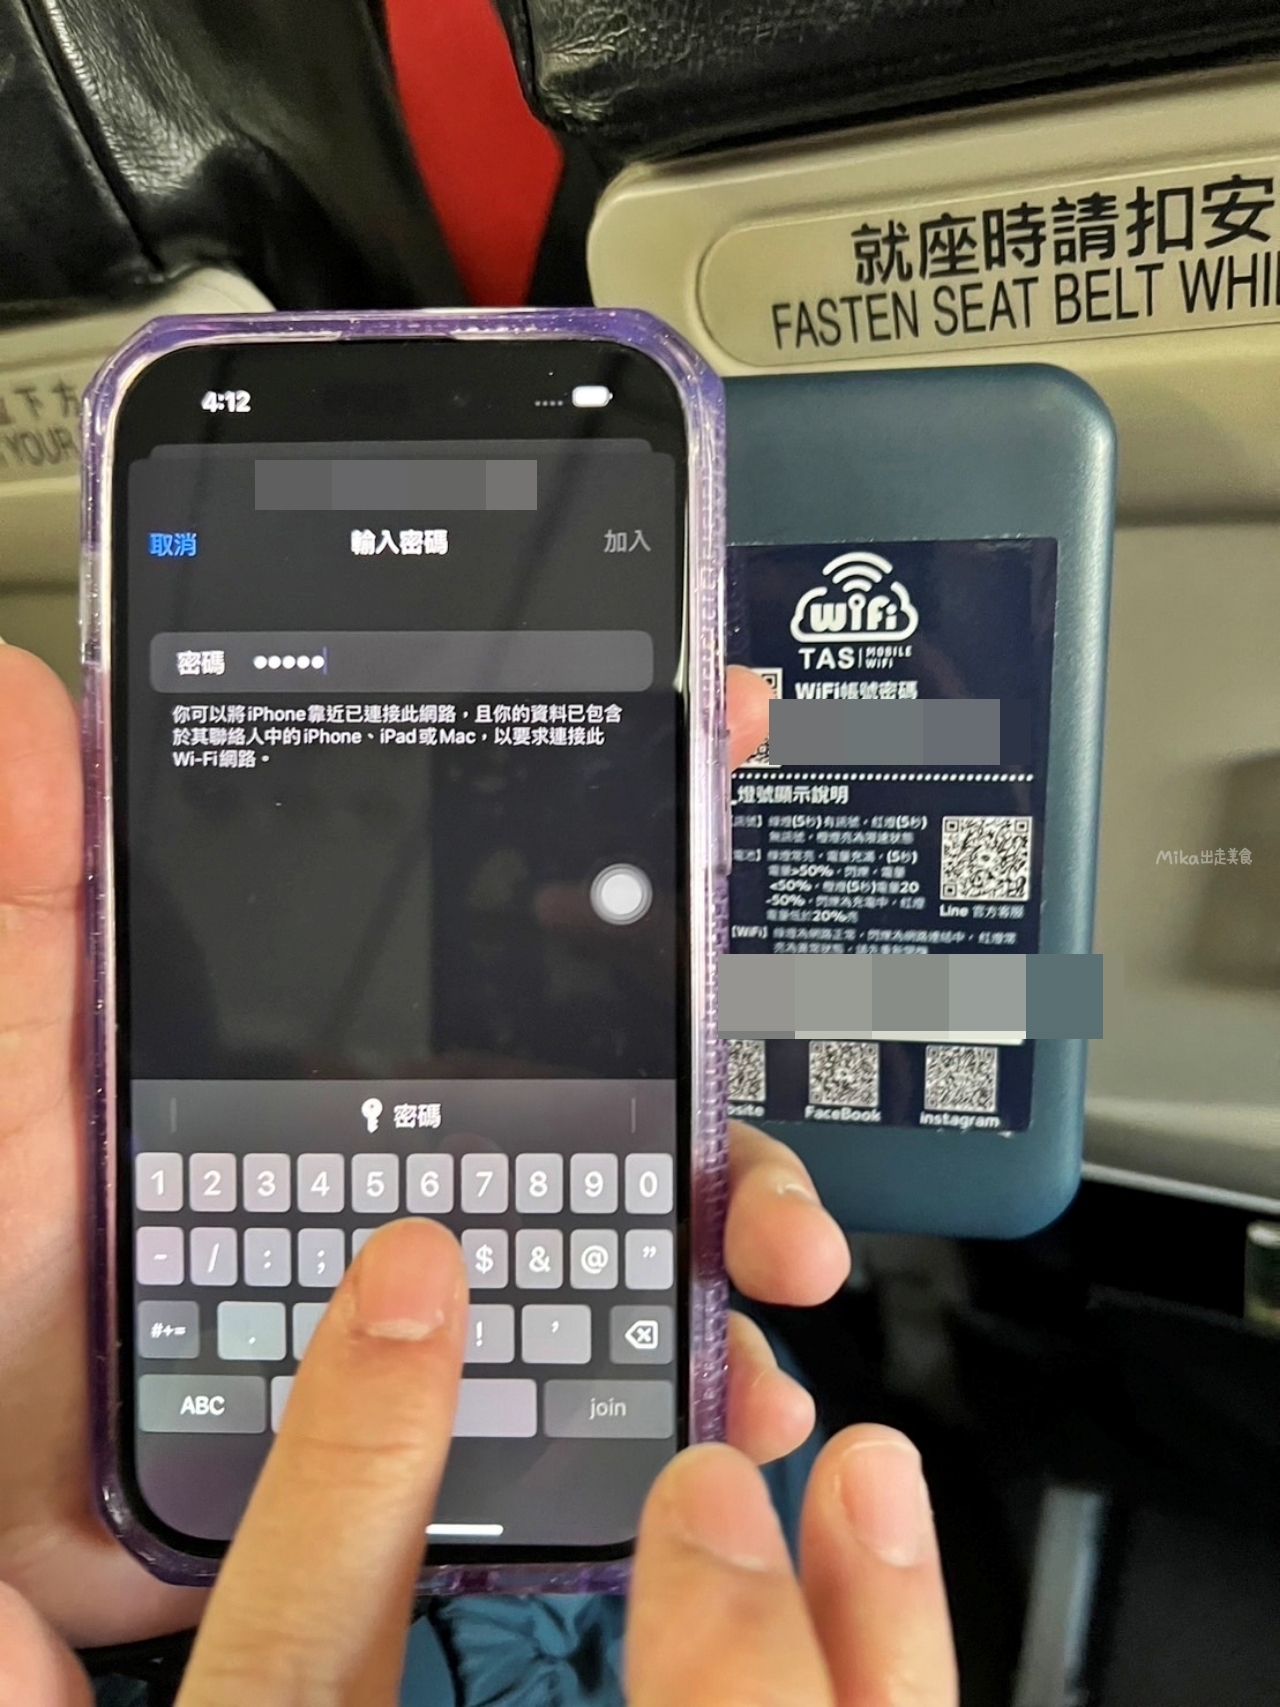 【日本】 TAS Mobile WiFi｜跨國上網分享器推薦  超輕薄好攜帶，日本高速上網一天只要99元。